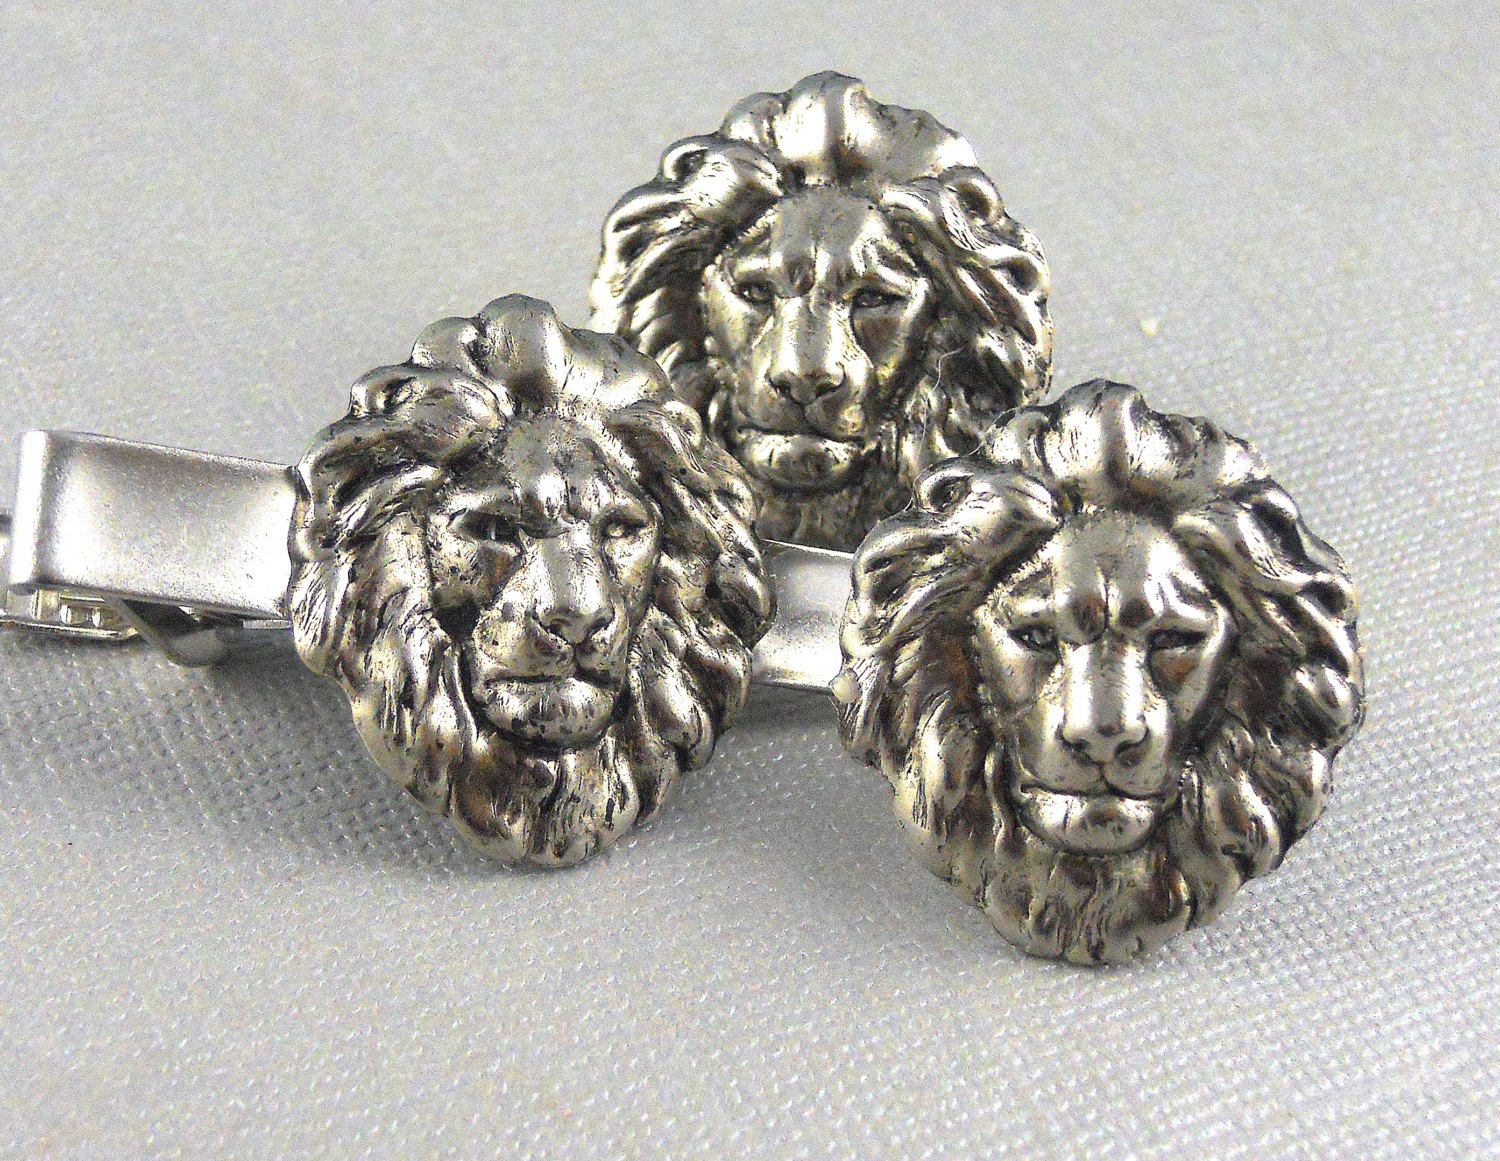 Silver Lion Cufflinks, Lion, Cufflink, Silver LionTie Clip, Tie Bar, Wedding, Lion, Vintage Gothic Inspired steampunk buy now online